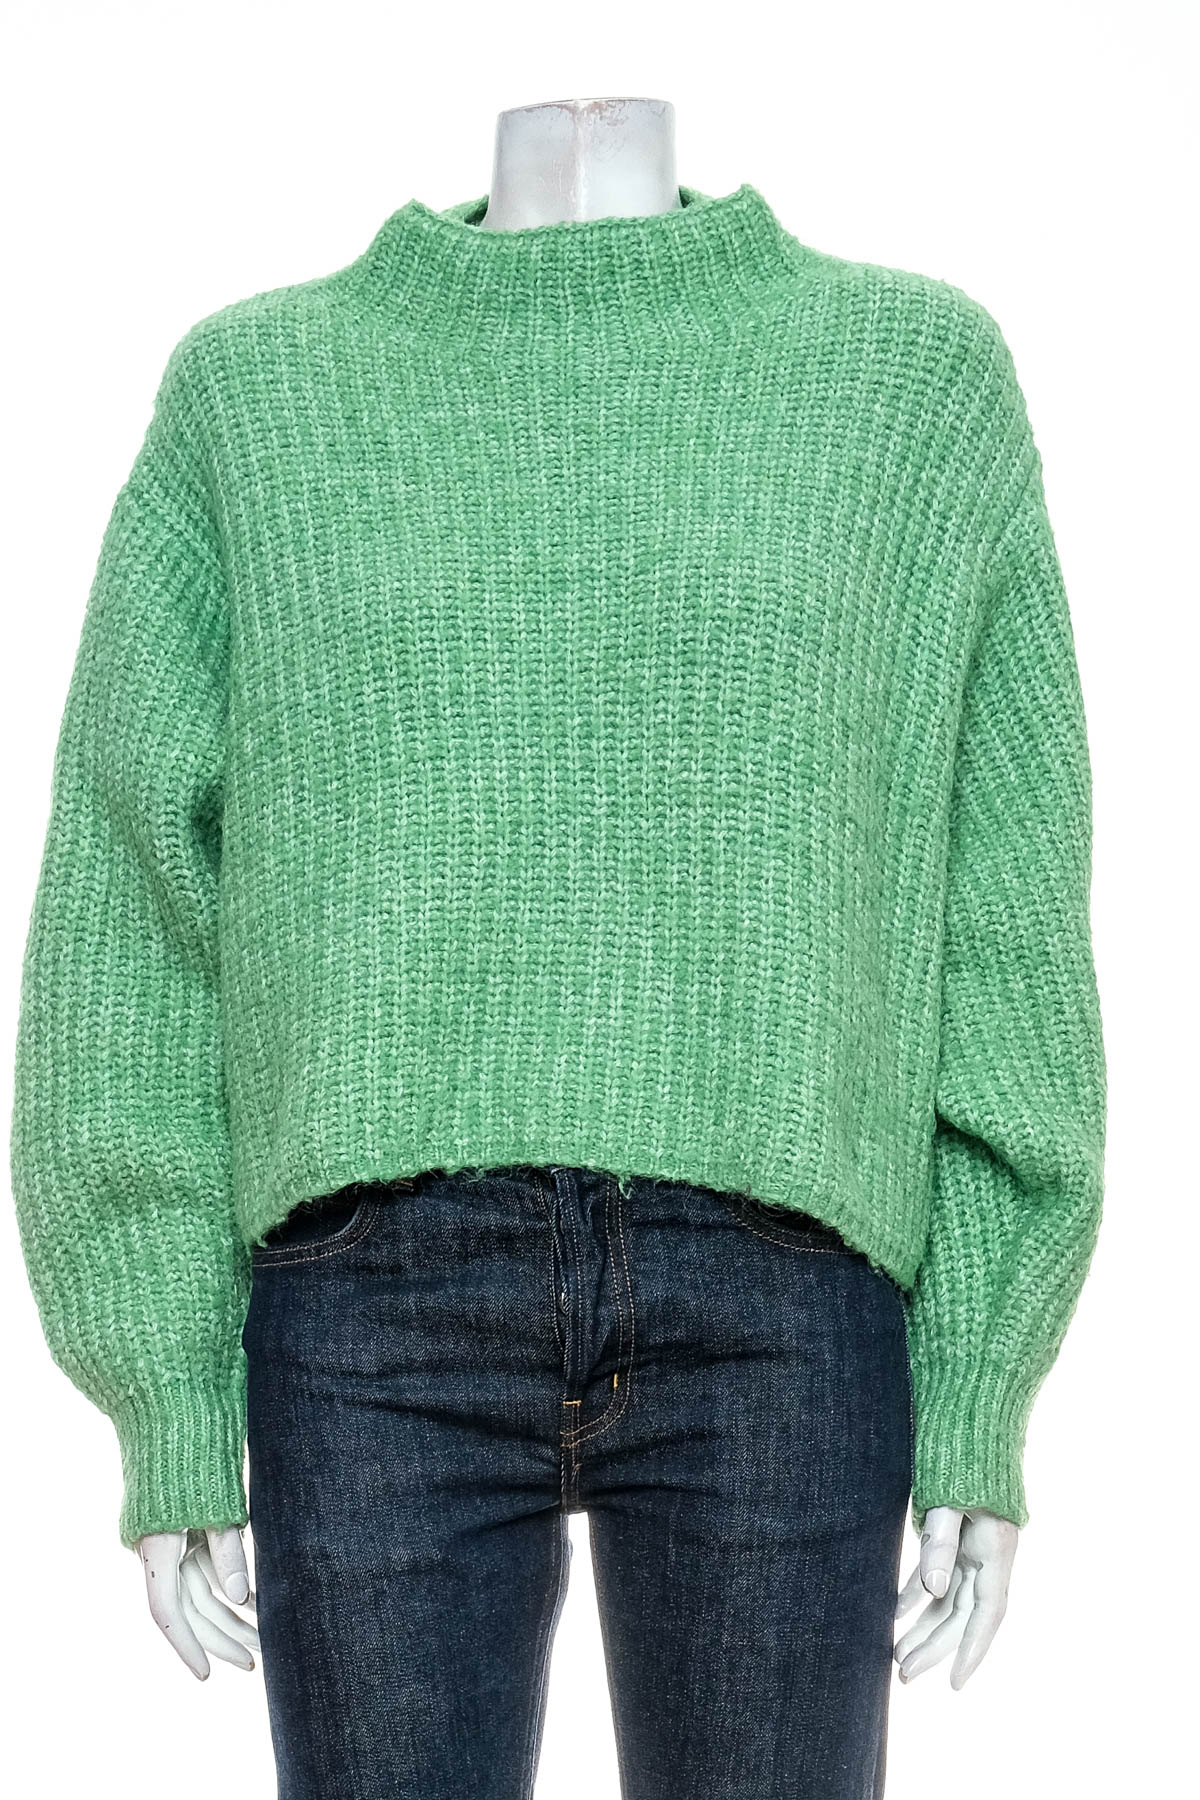 Women's sweater - MNG - 0